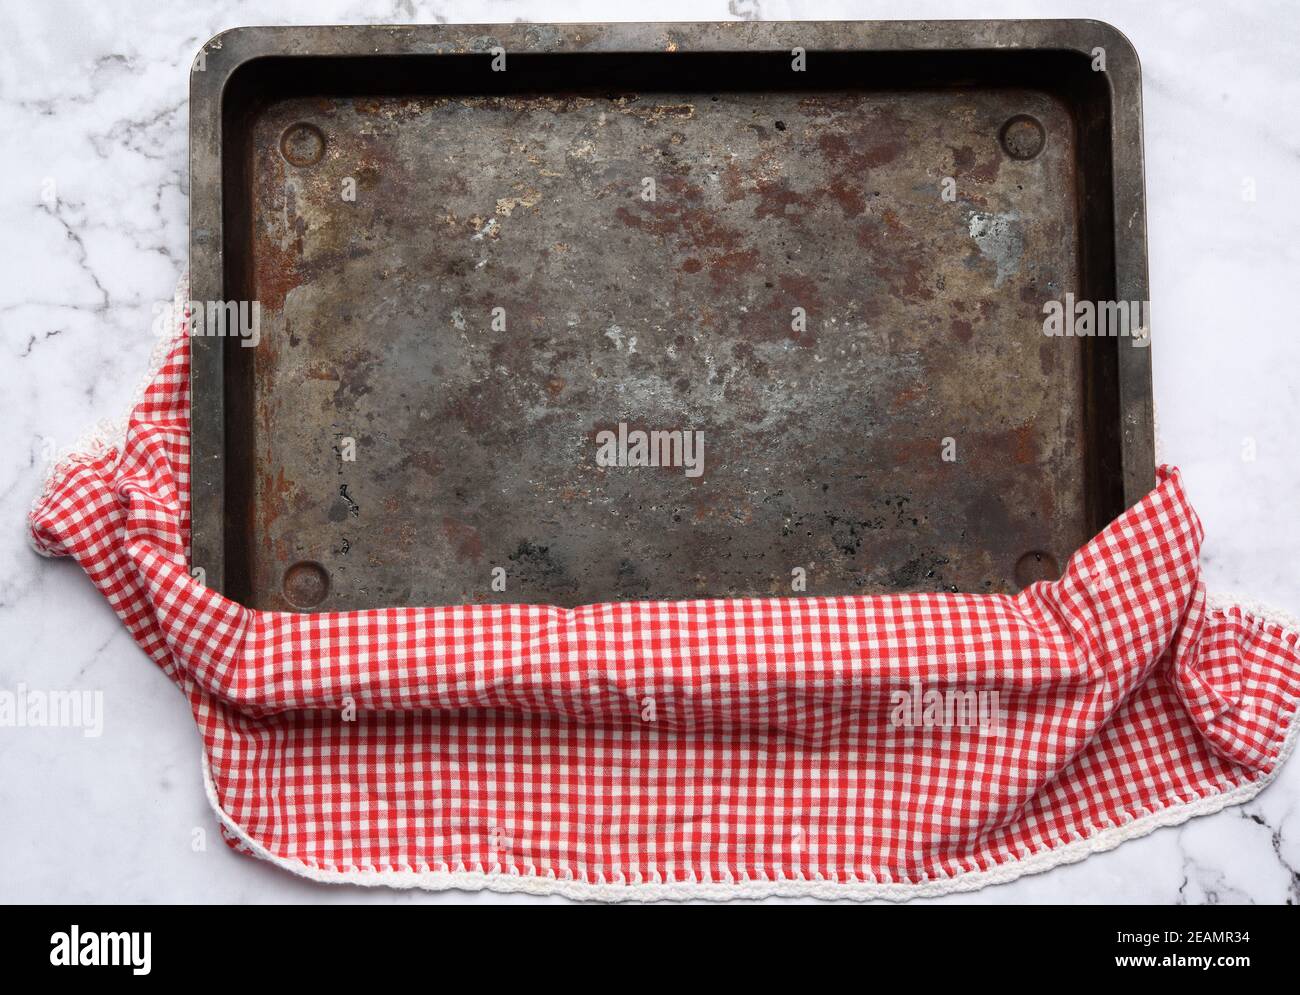 vider la plaque de cuisson rectangulaire en fer sur une table en marbre blanc Banque D'Images